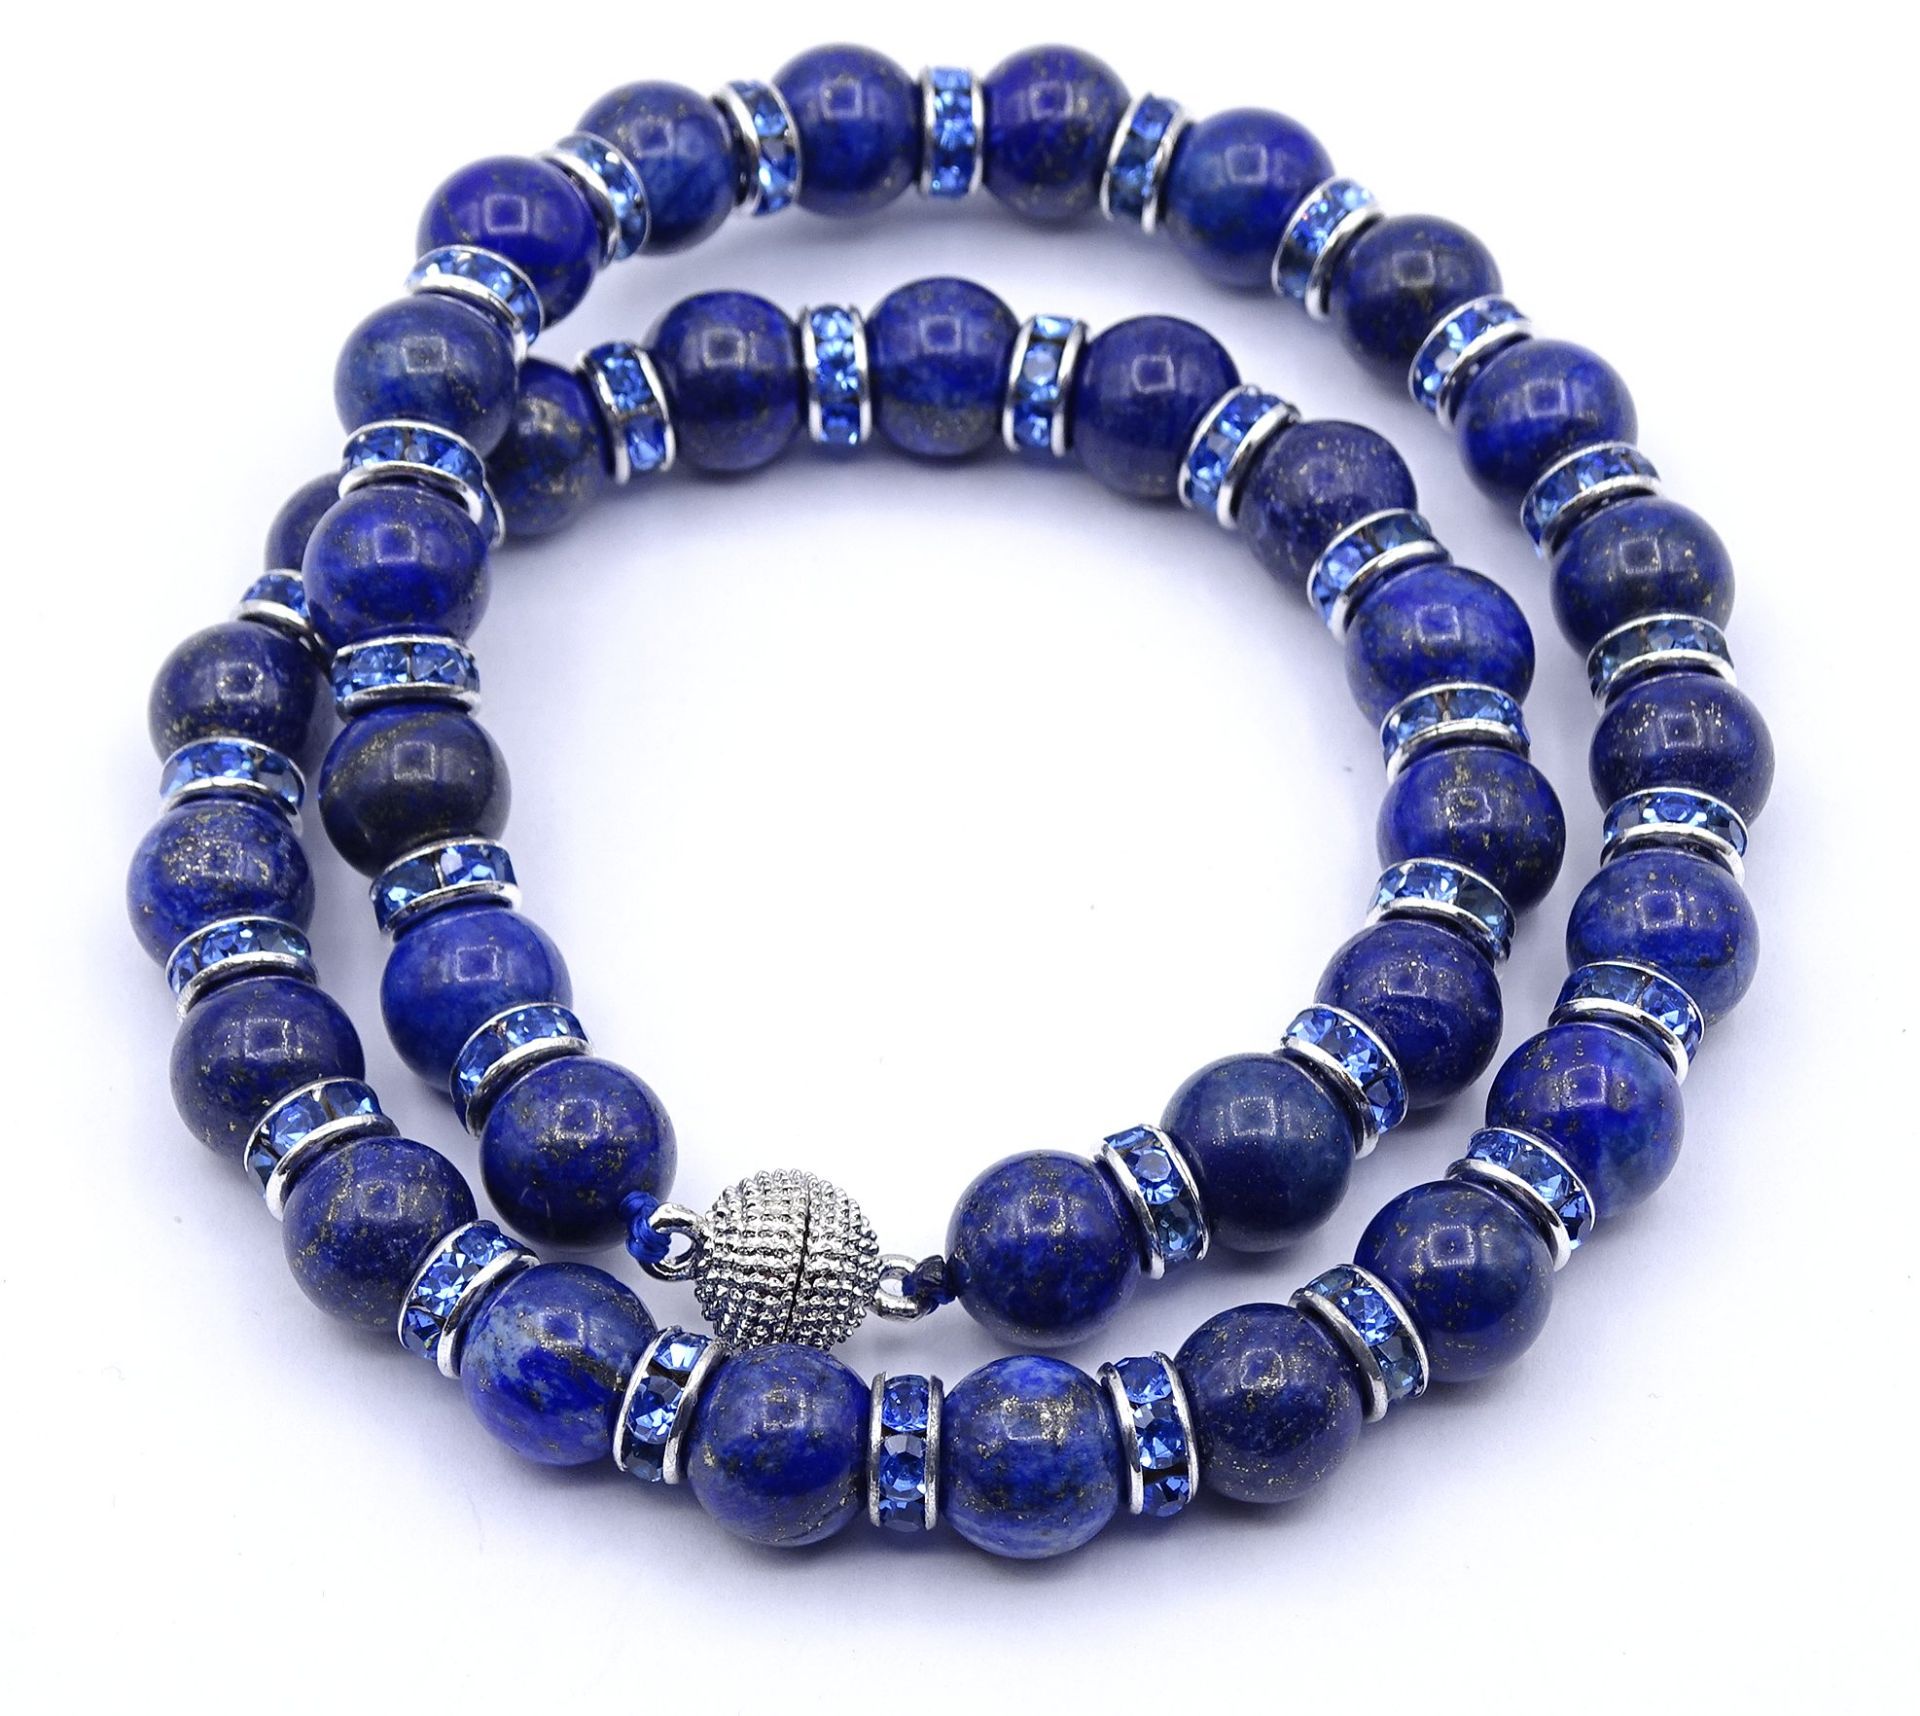 Lapislazuli Halskette mit Magnetverschluss, blaue Glas Zwischenelemente, L. 47cm, 80,5g. - Image 4 of 4